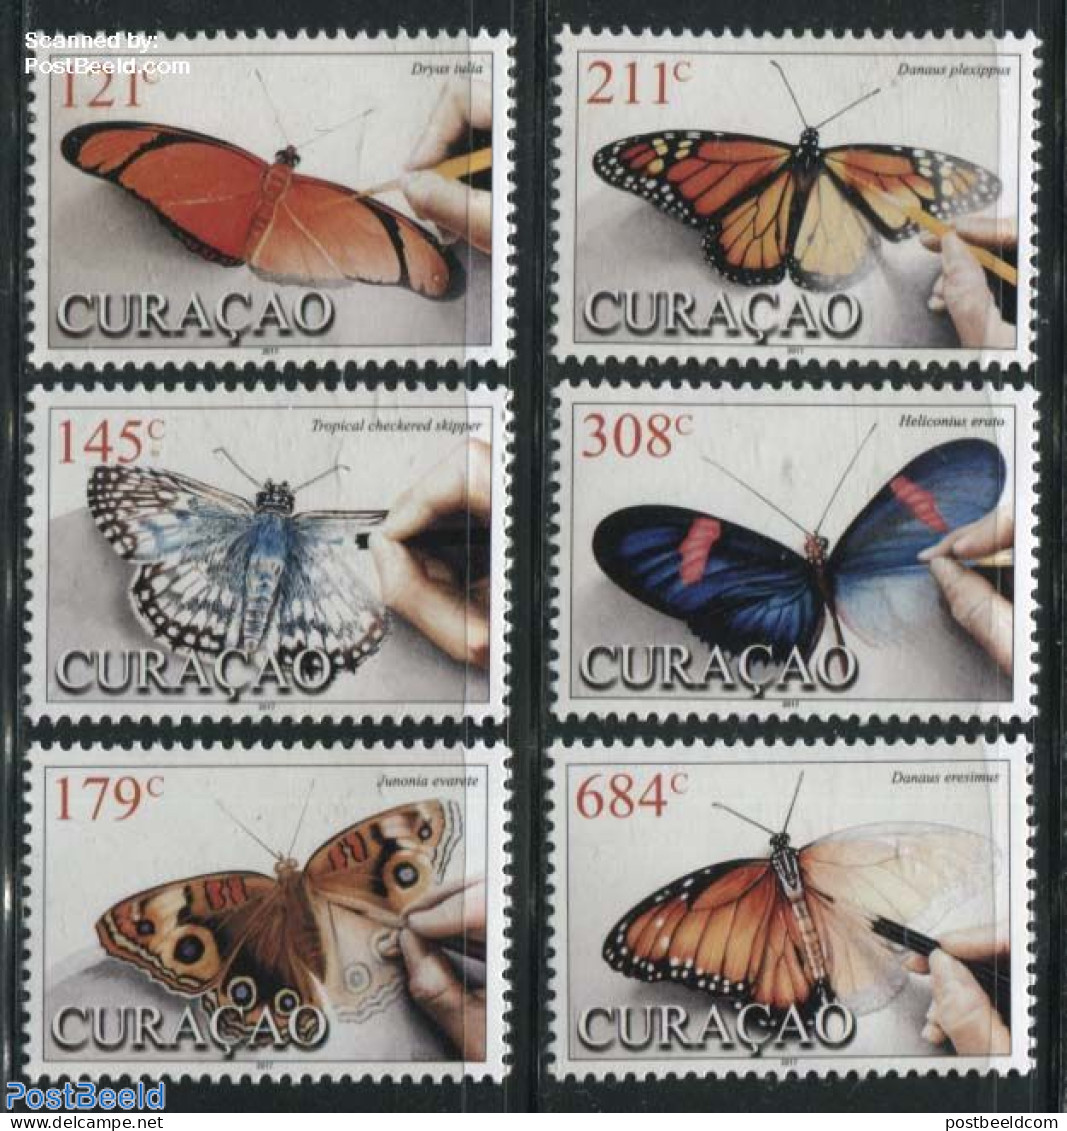 Curaçao 2017 Butterflies 6v, Mint NH, Nature - Butterflies - Curaçao, Antilles Neérlandaises, Aruba